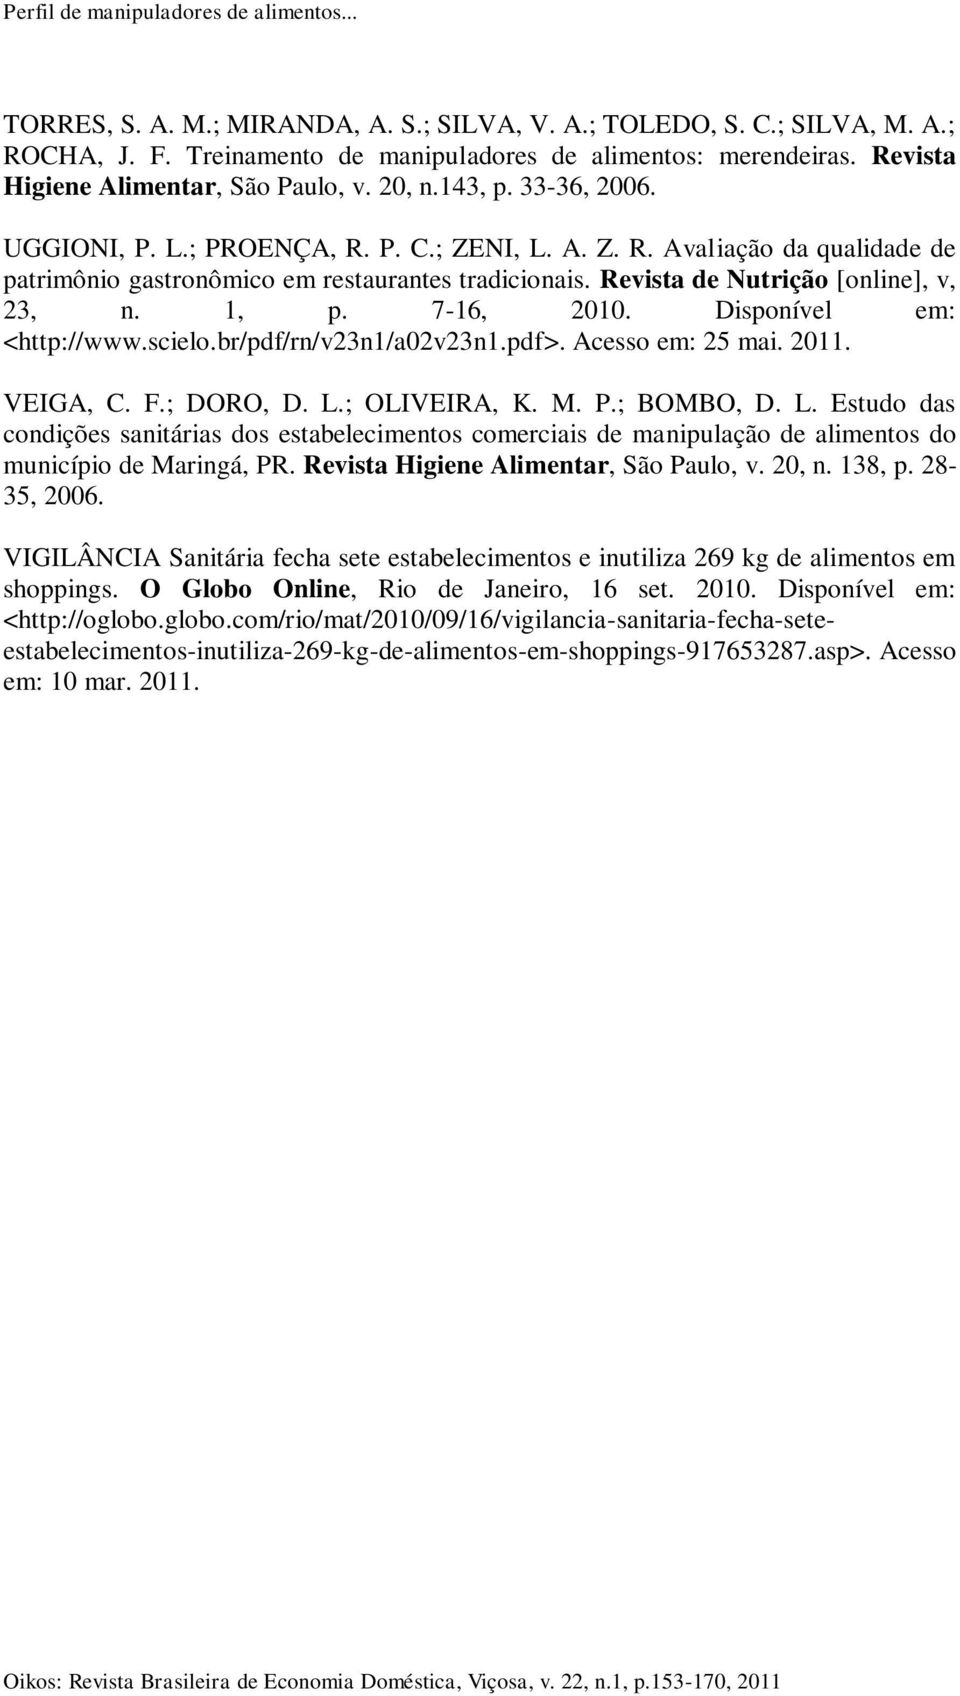 Revista de Nutrição [online], v, 23, n. 1, p. 7-16, 2010. Disponível em: <http://www.scielo.br/pdf/rn/v23n1/a02v23n1.pdf>. Acesso em: 25 mai. 2011. VEIGA, C. F.; DORO, D. L.; OLIVEIRA, K. M. P.